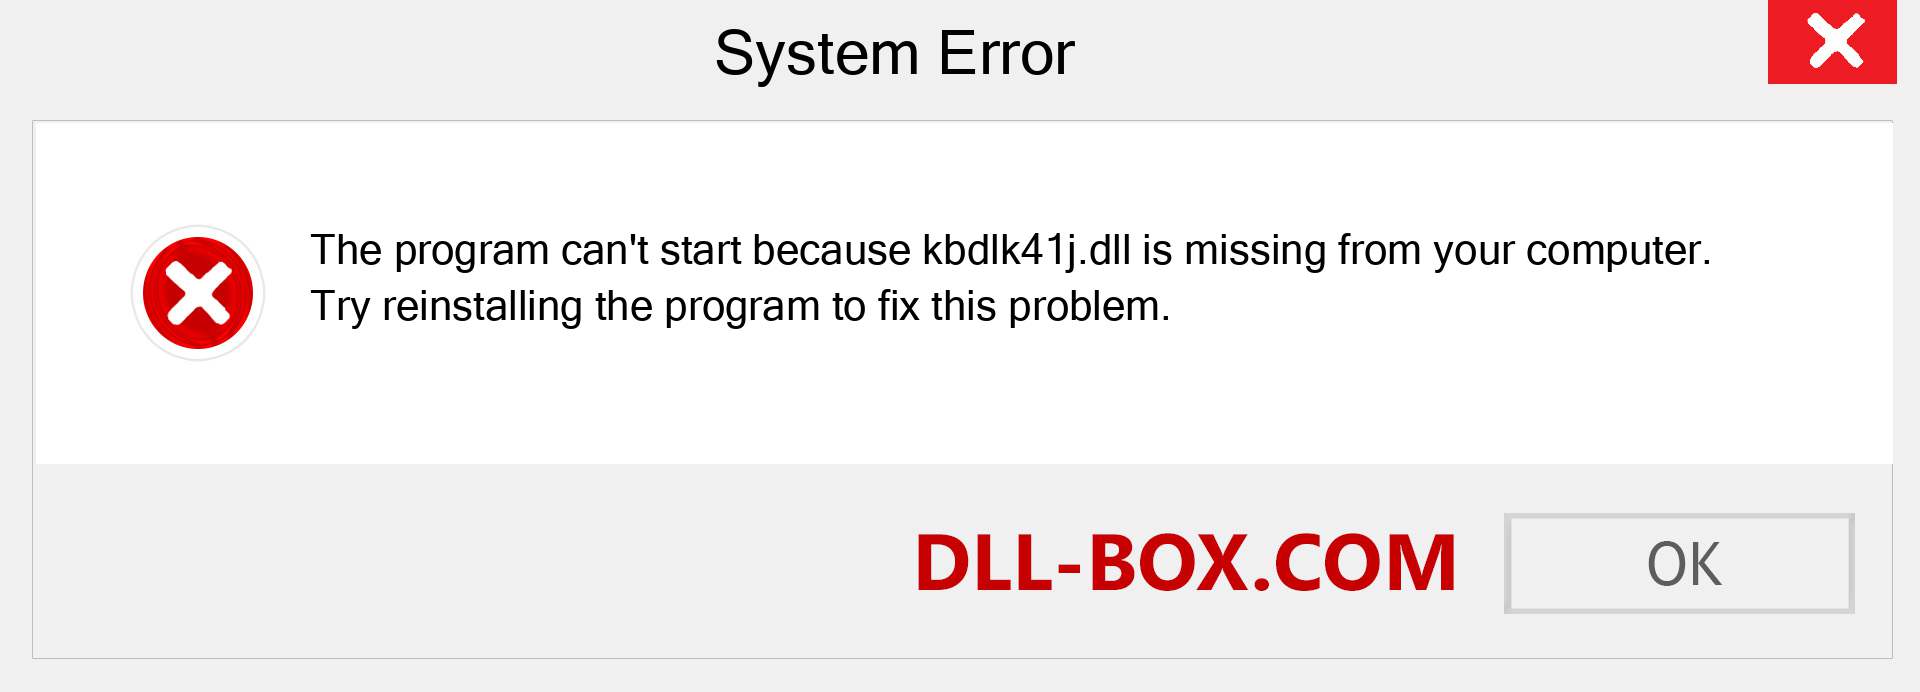  kbdlk41j.dll file is missing?. Download for Windows 7, 8, 10 - Fix  kbdlk41j dll Missing Error on Windows, photos, images